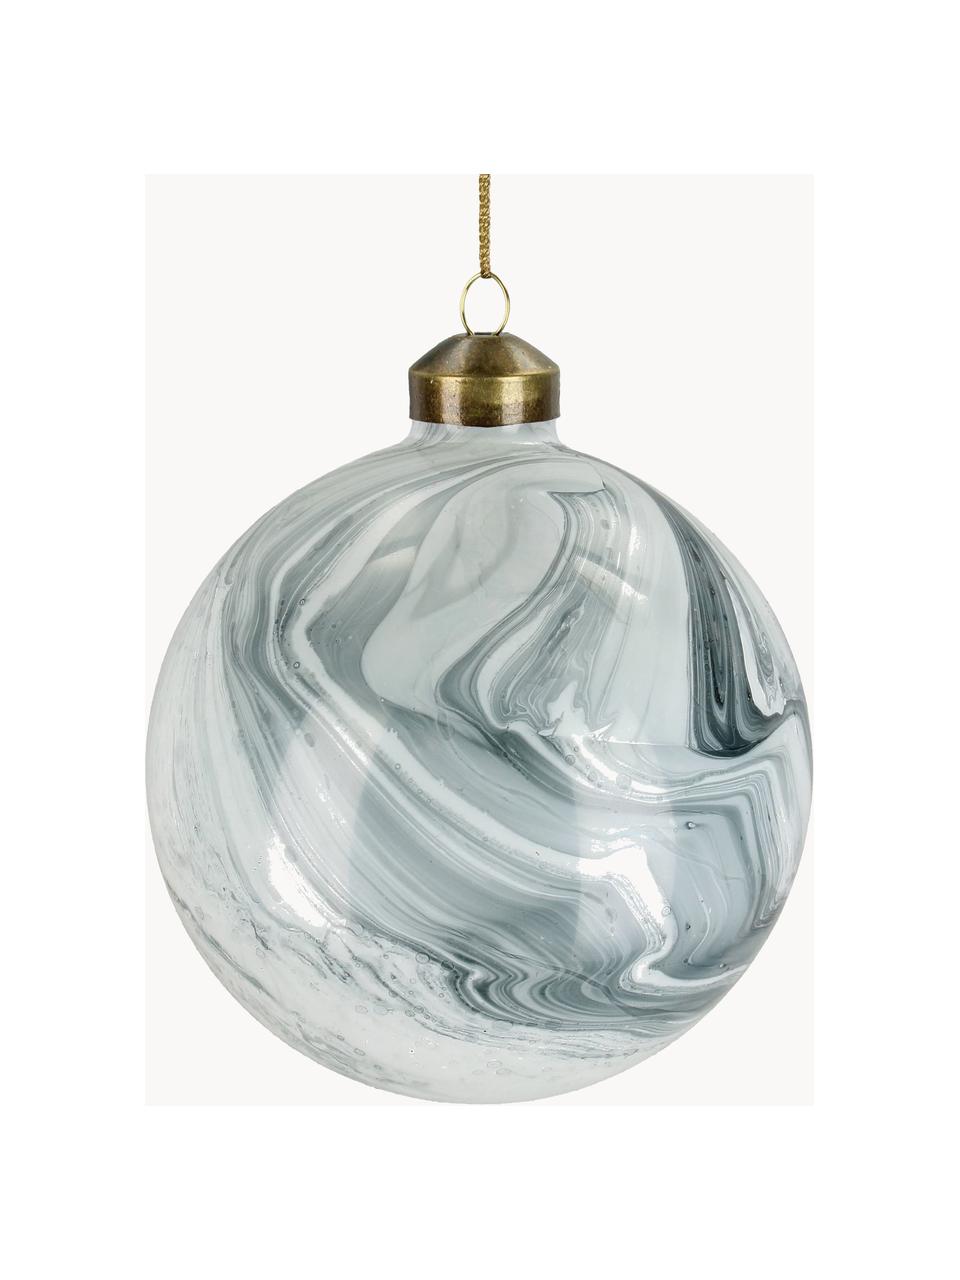 Boules de Noël aspect marbre Marble, 6 pièces, Verre, Blanc, gris, aspect marbre, Ø 10 cm